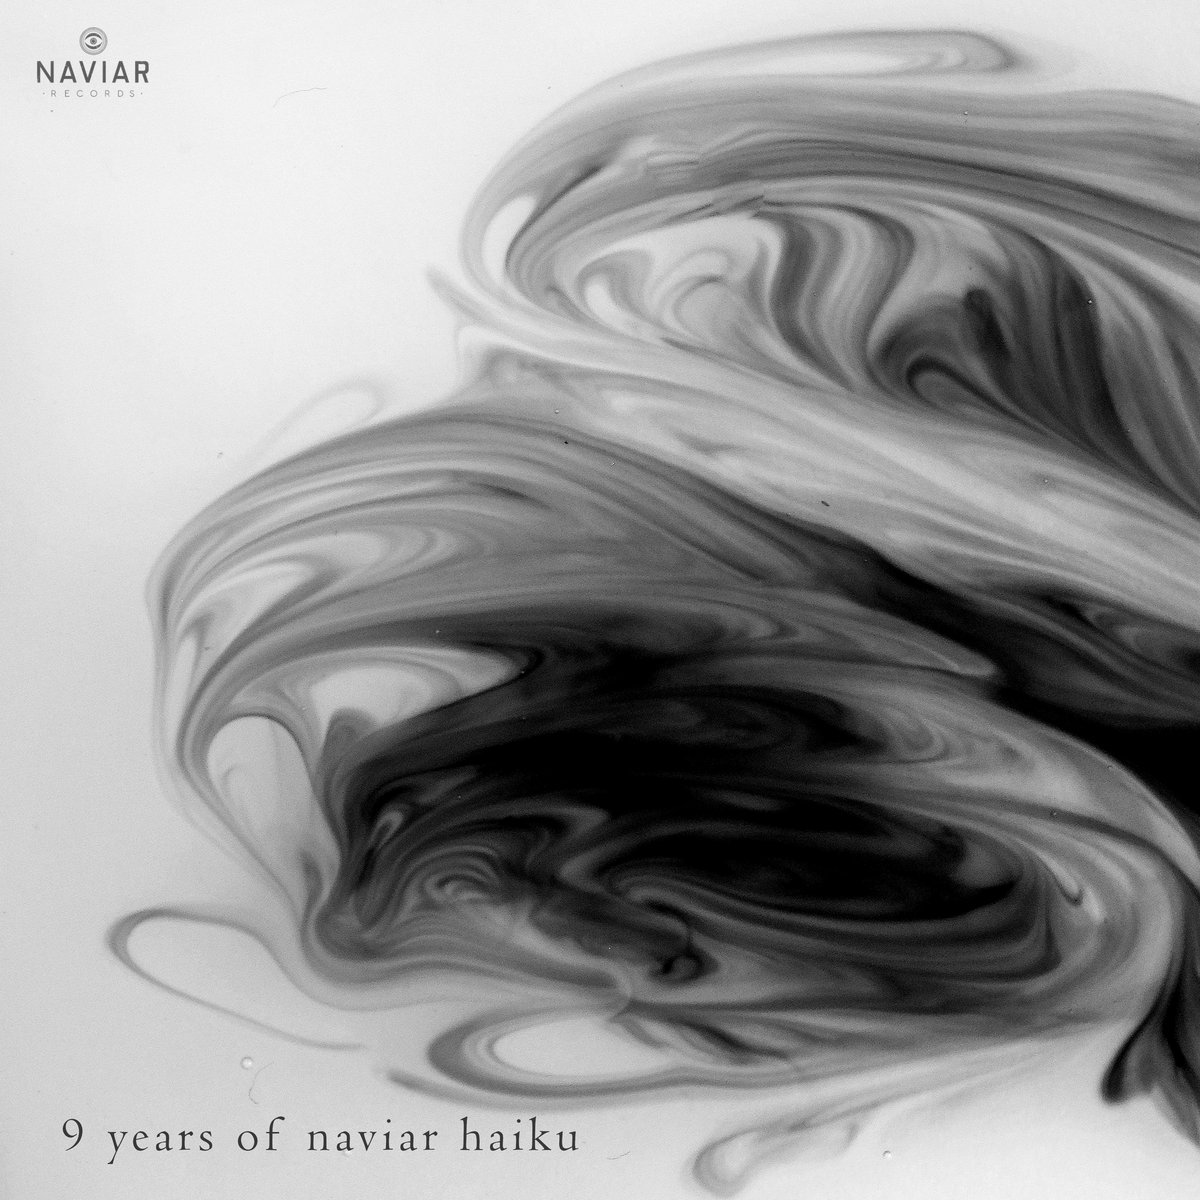 9 Years of Naviar Haiku album cover - black and white and grey ink swirl